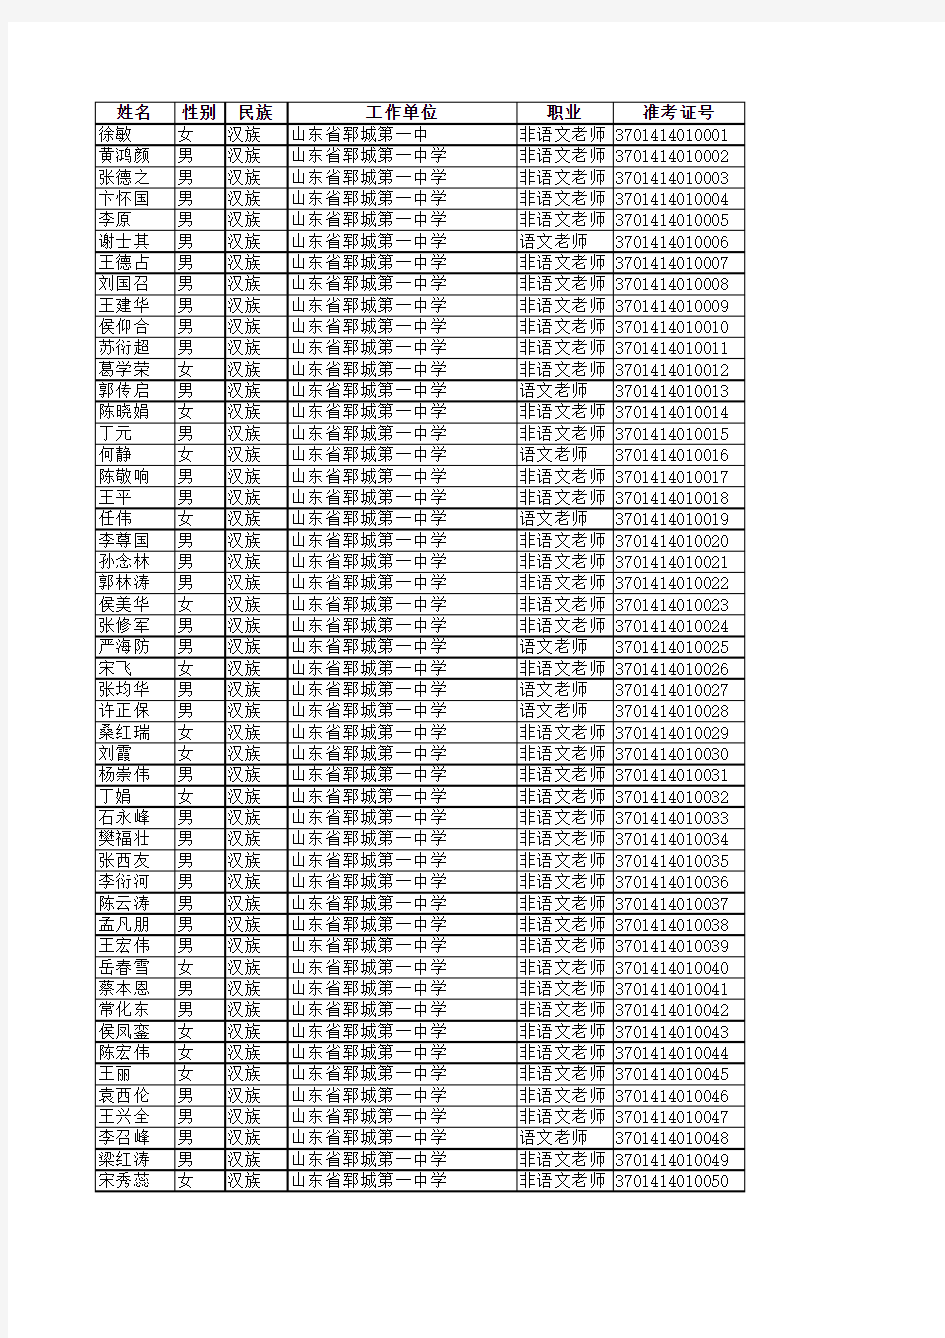 2013年郓城县教育系统普通话水平测试成绩登记表